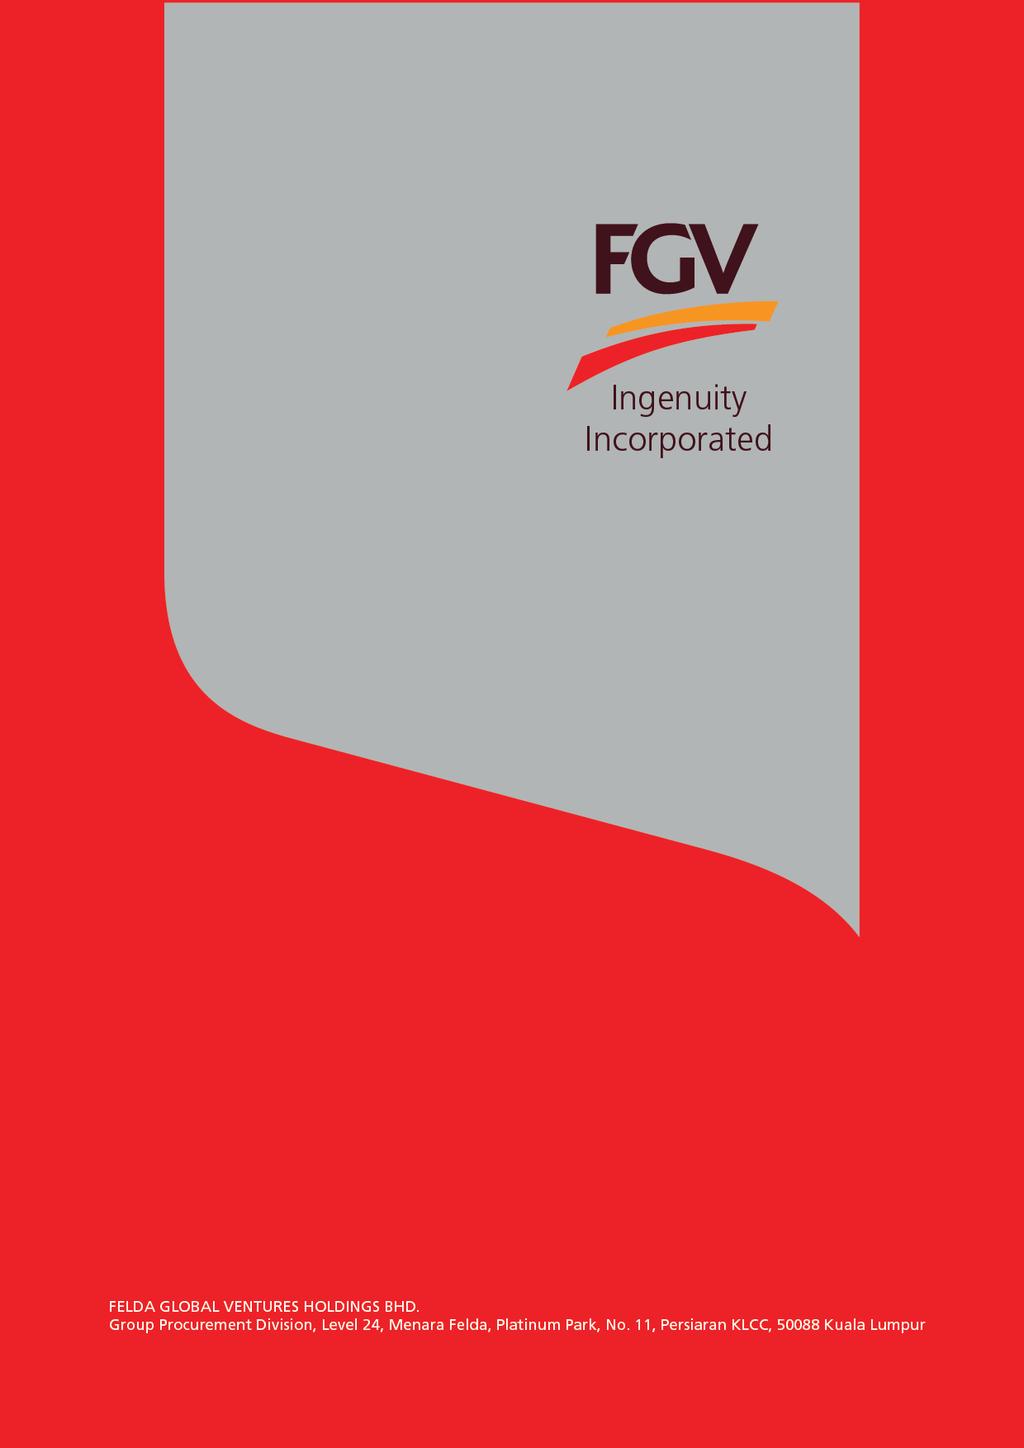 FGV edaftar Carian Website / Pendaftaran Baru / Pembaharuan Pendaftaran / Penambahan & Pertukaran Kod